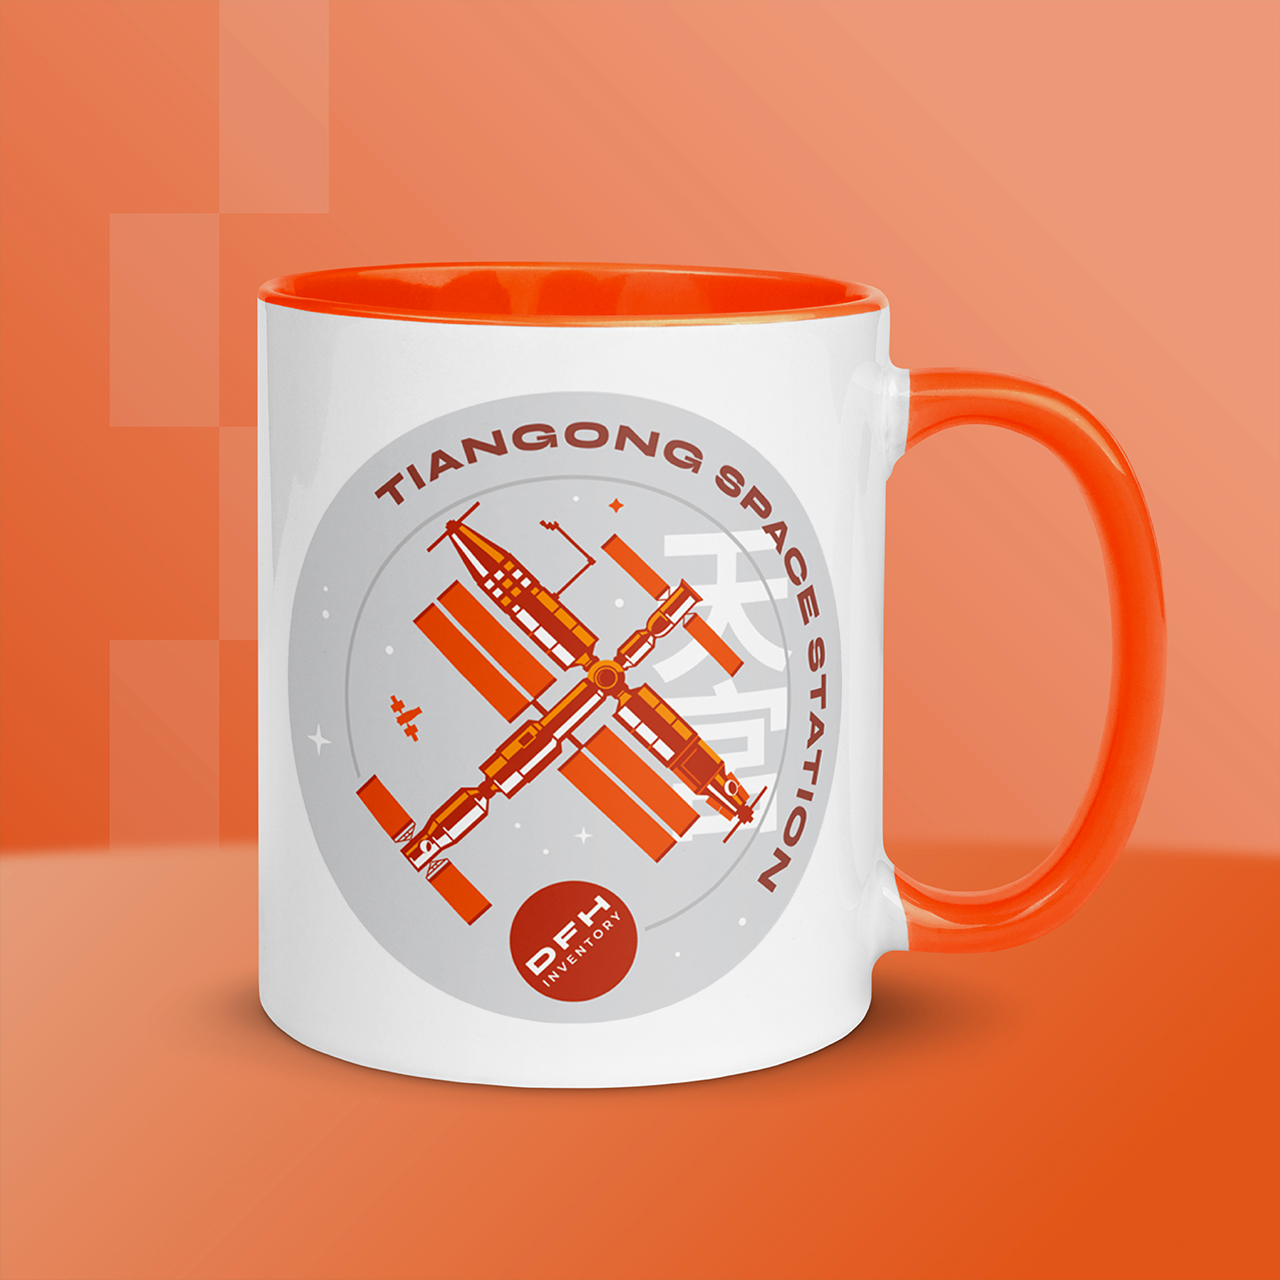 Tiangong Space Station - Color Mug